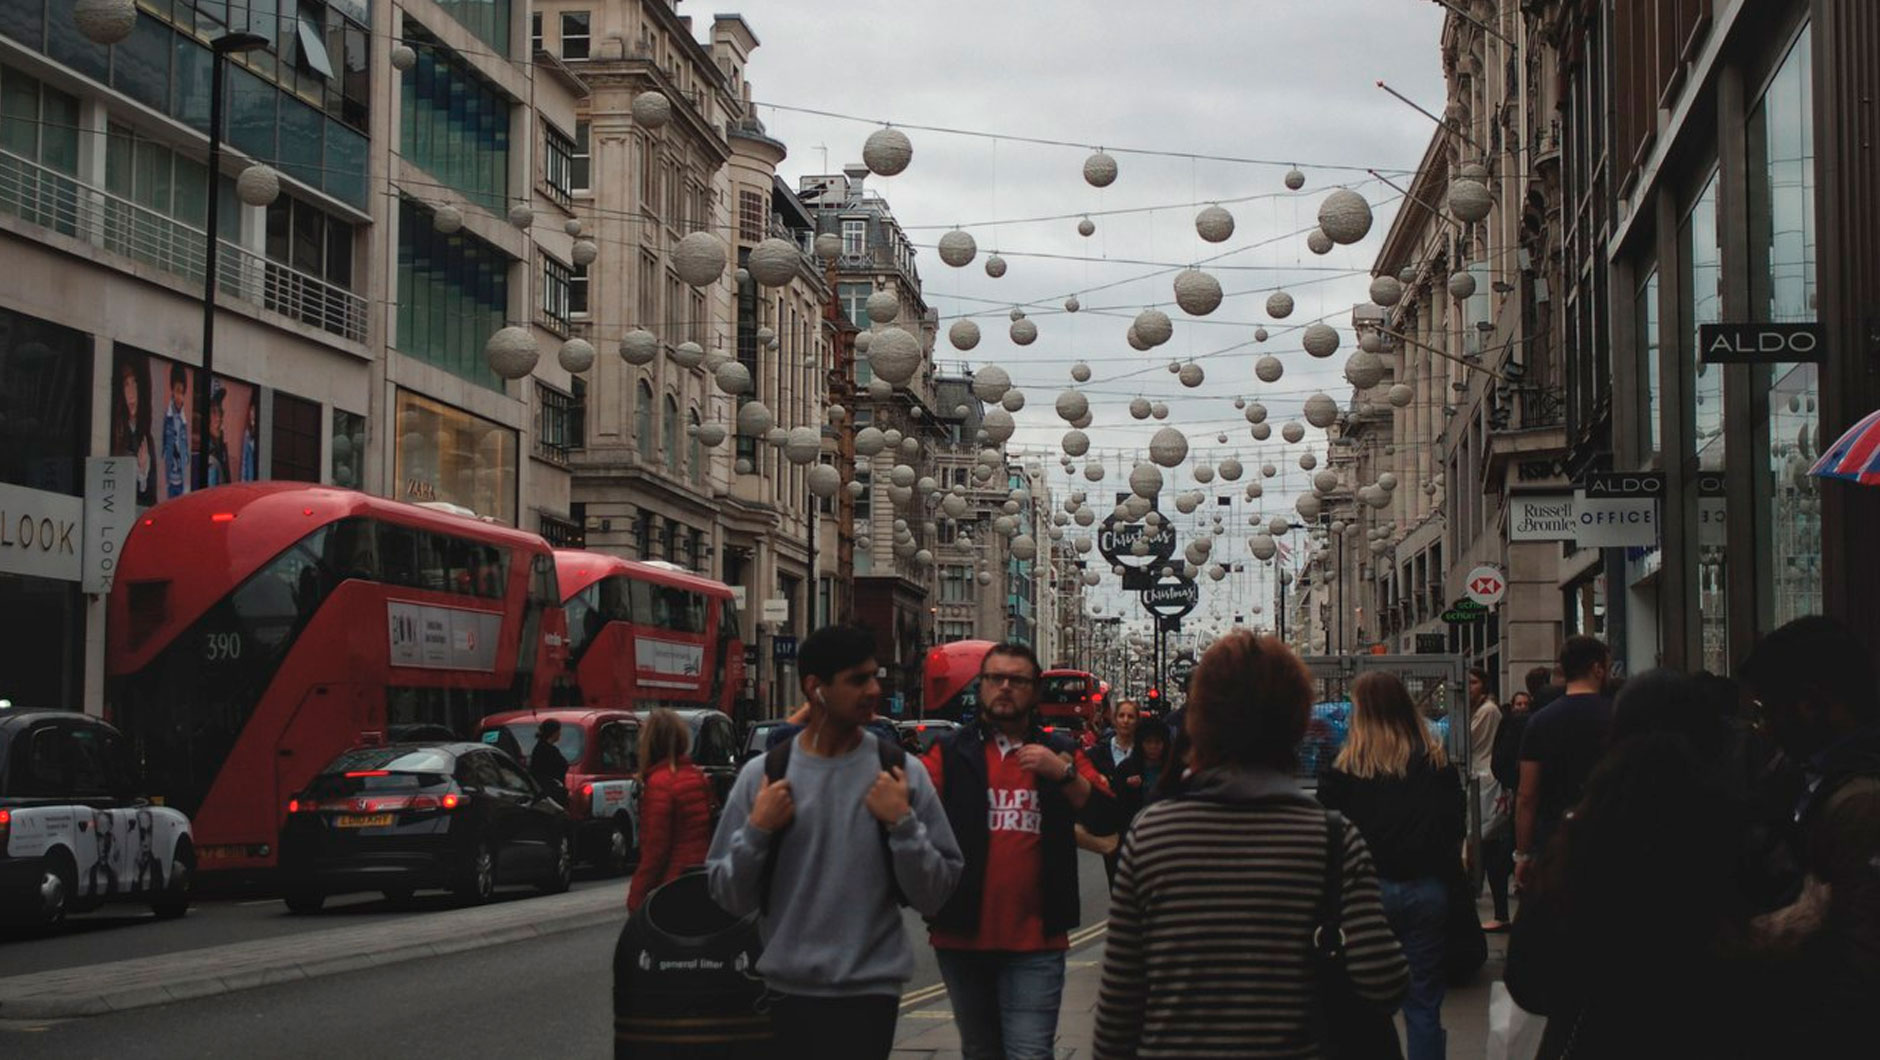 Пикадилли - одна из самых дорогих улиц в Лондоне. Здесь сконцентрированы все самые дорогие магазины